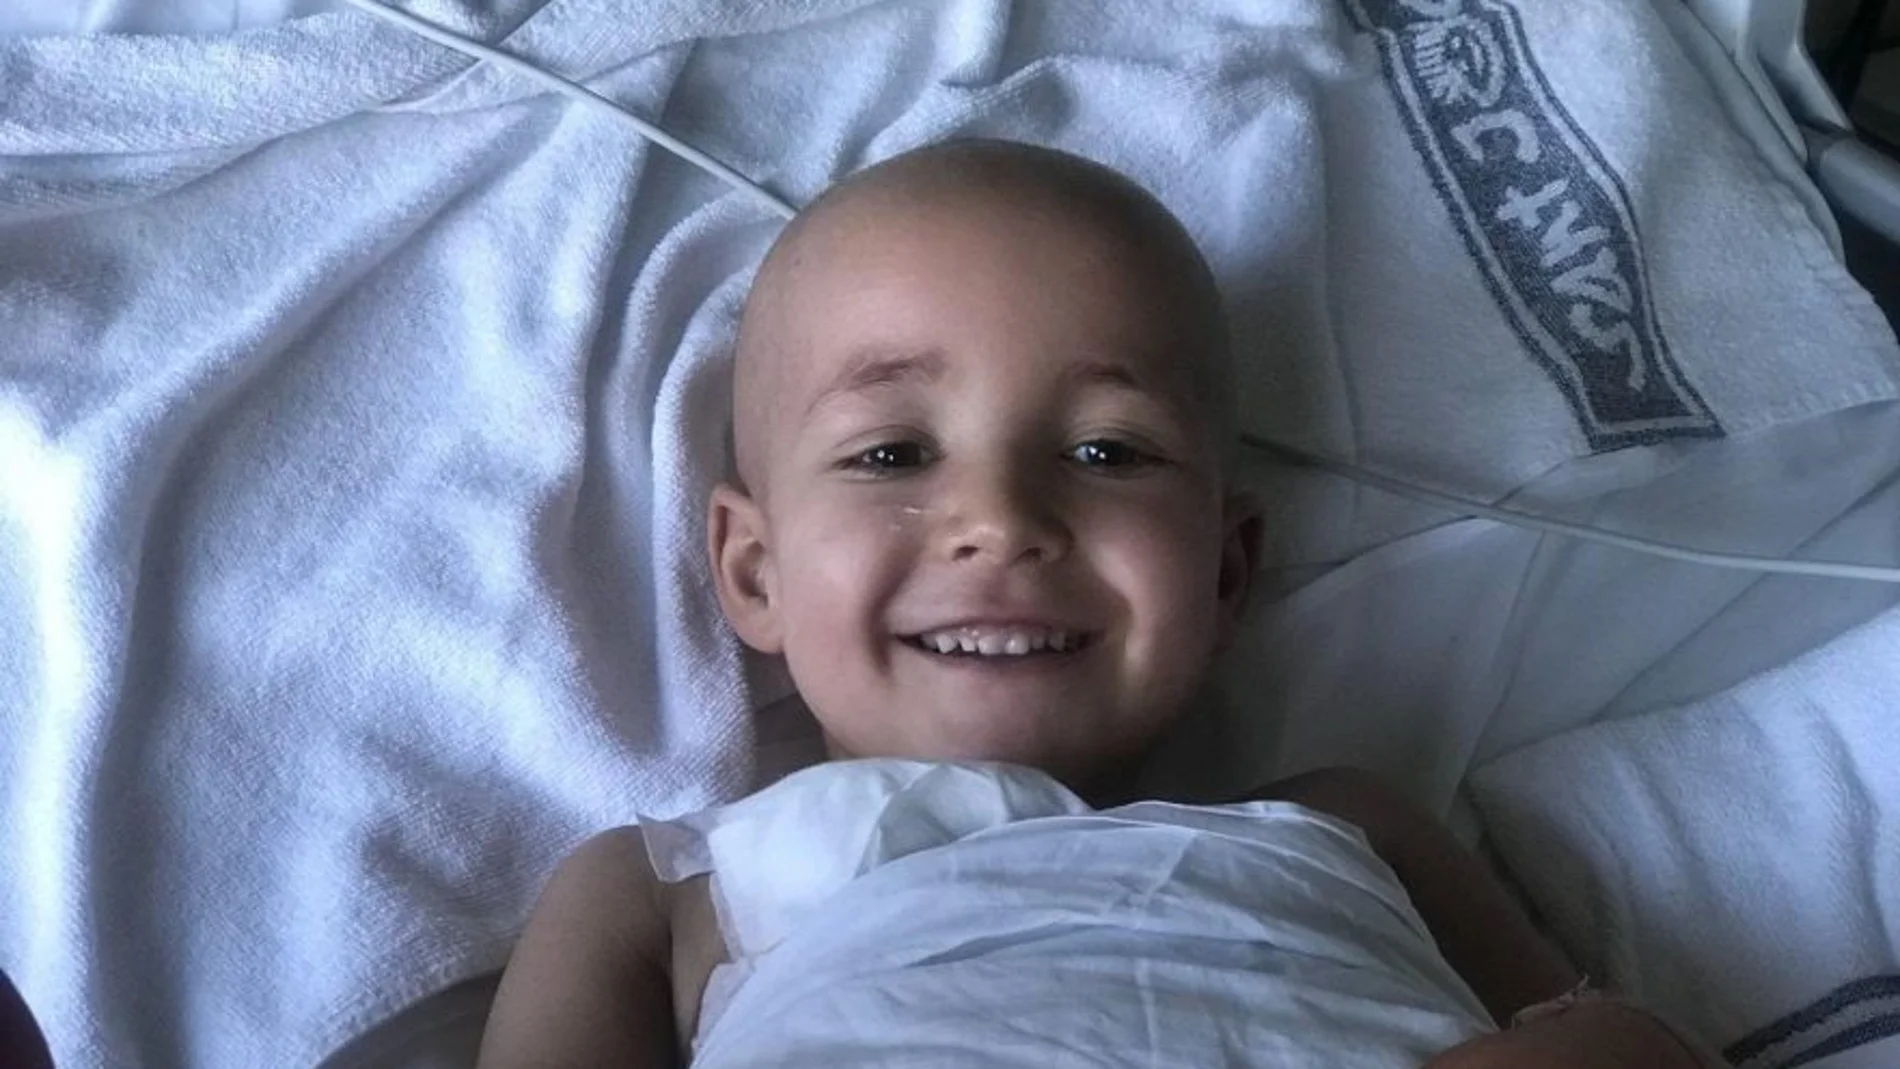 Julen (3) ha sido diagnosticado de neuroblastoma. (Foto: Fundación Neuroblastoma)